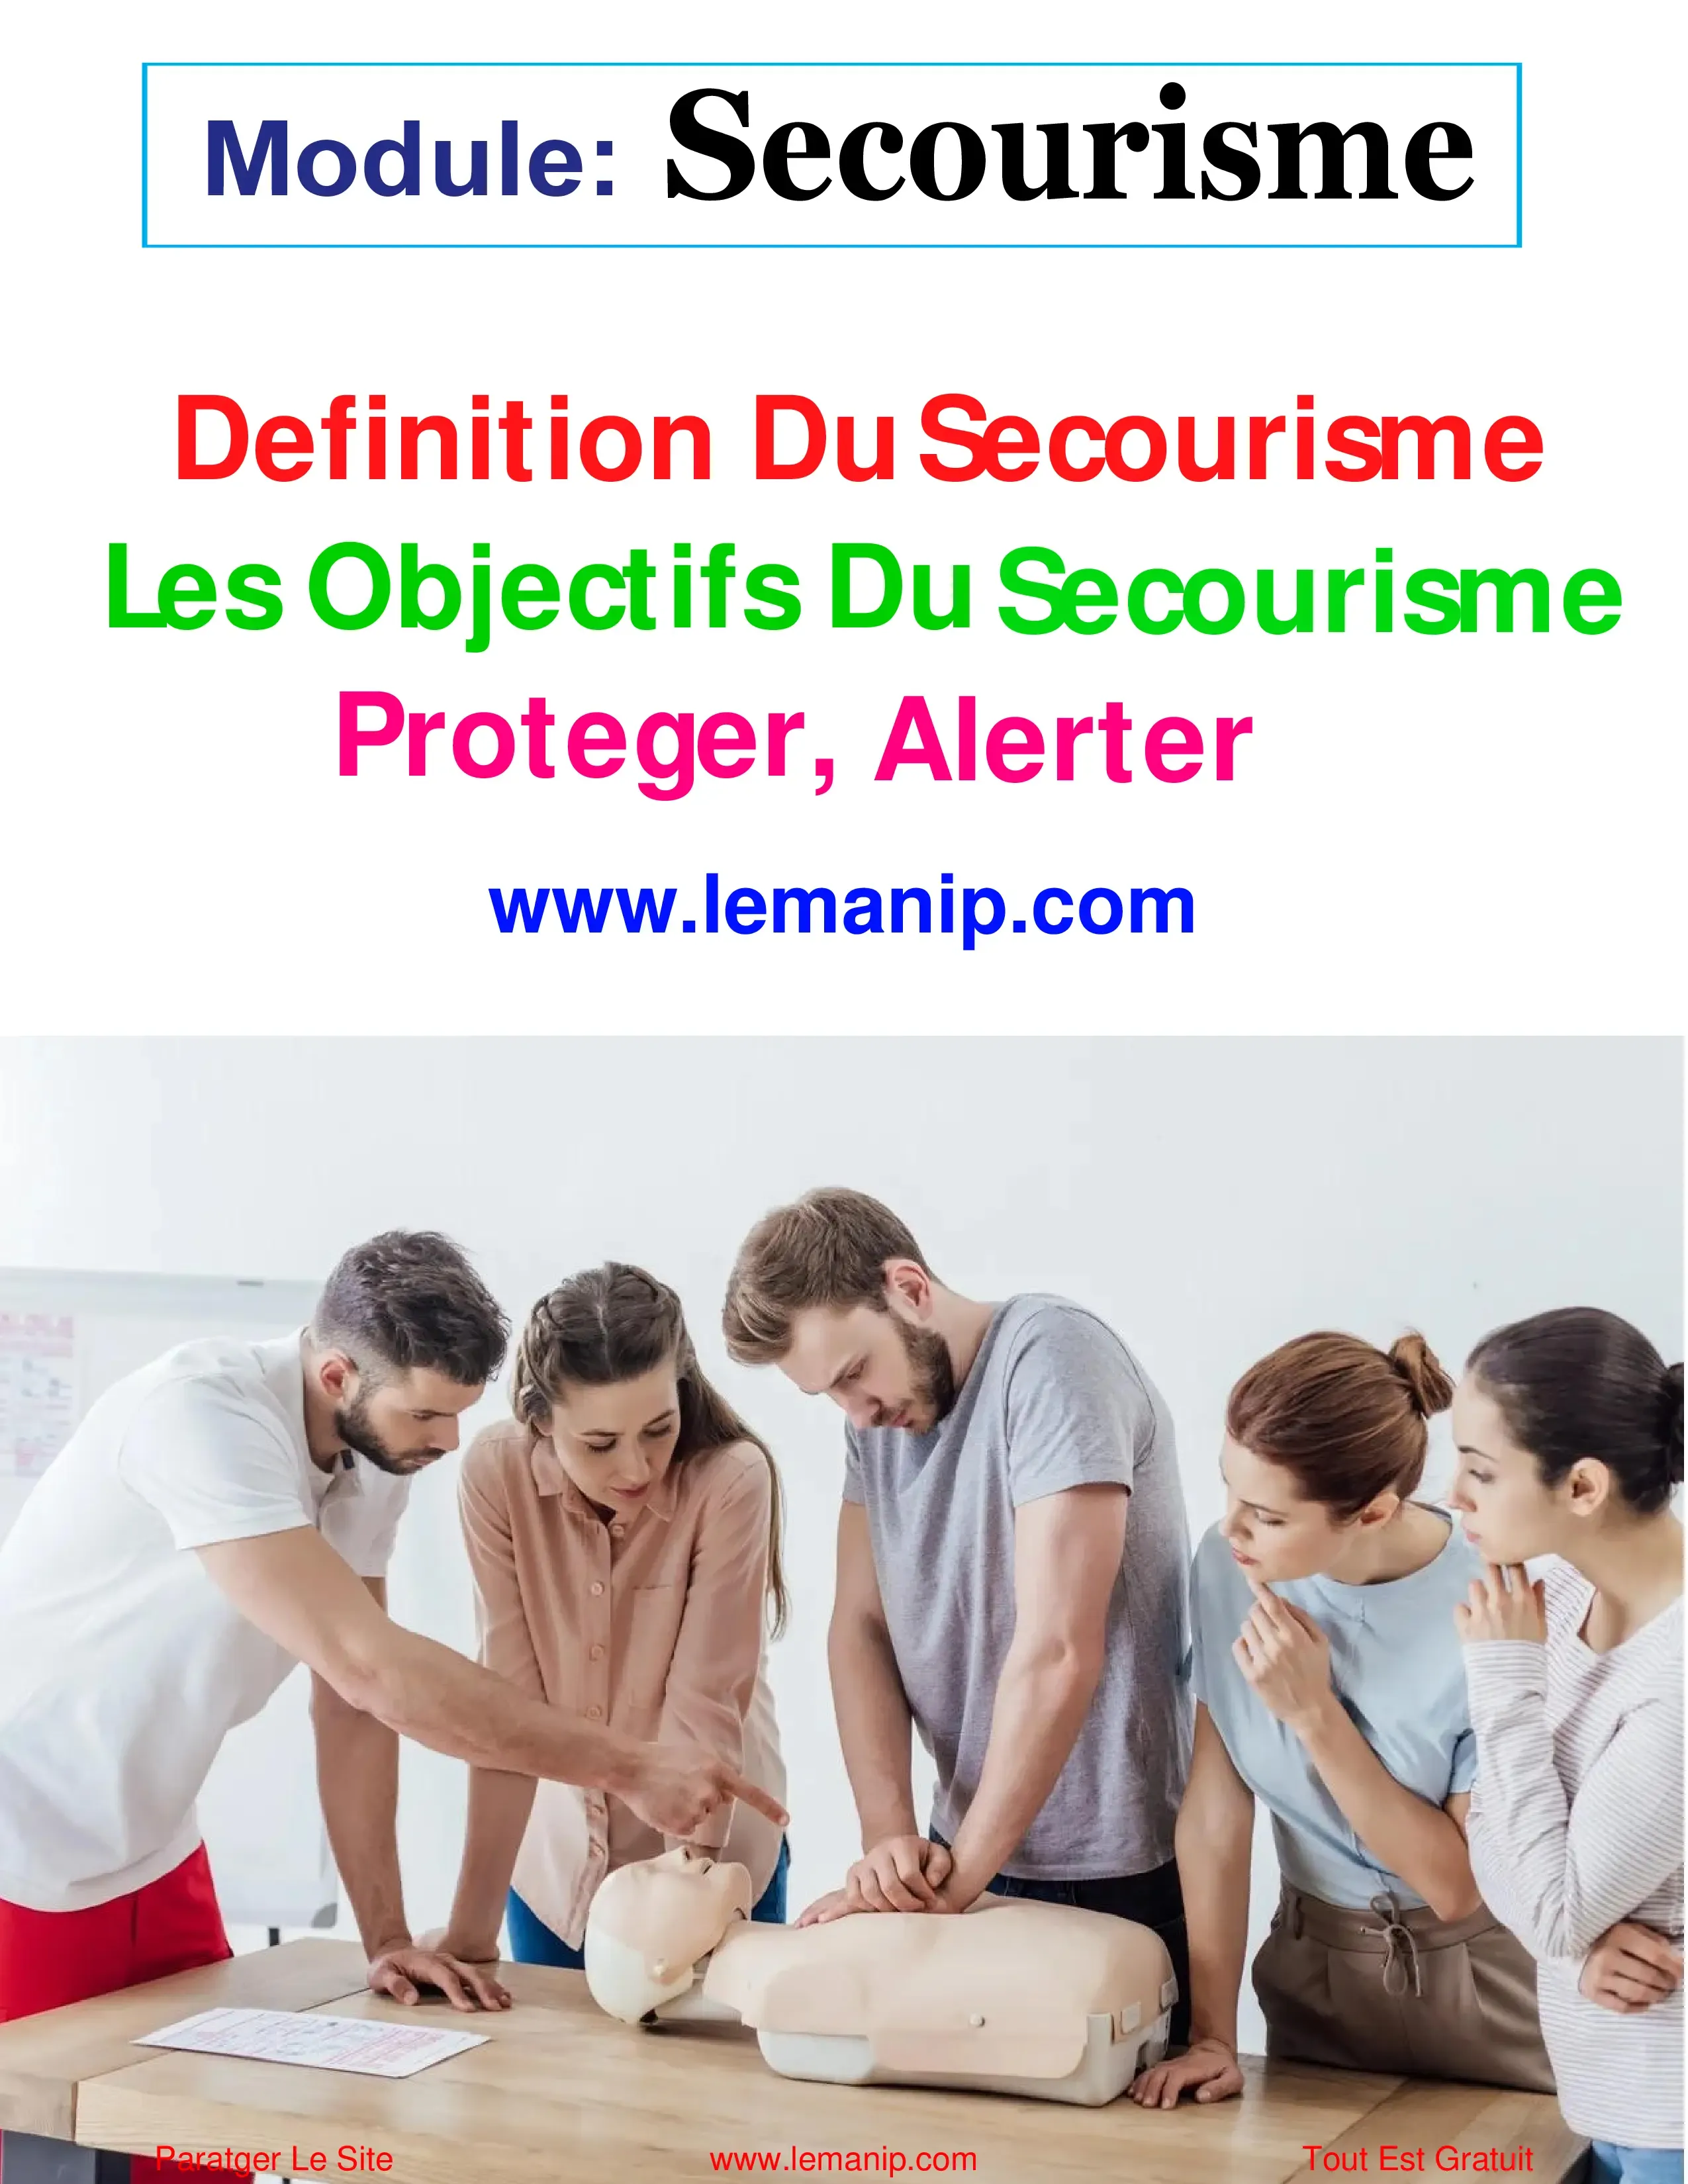 Definition Du Secourisme